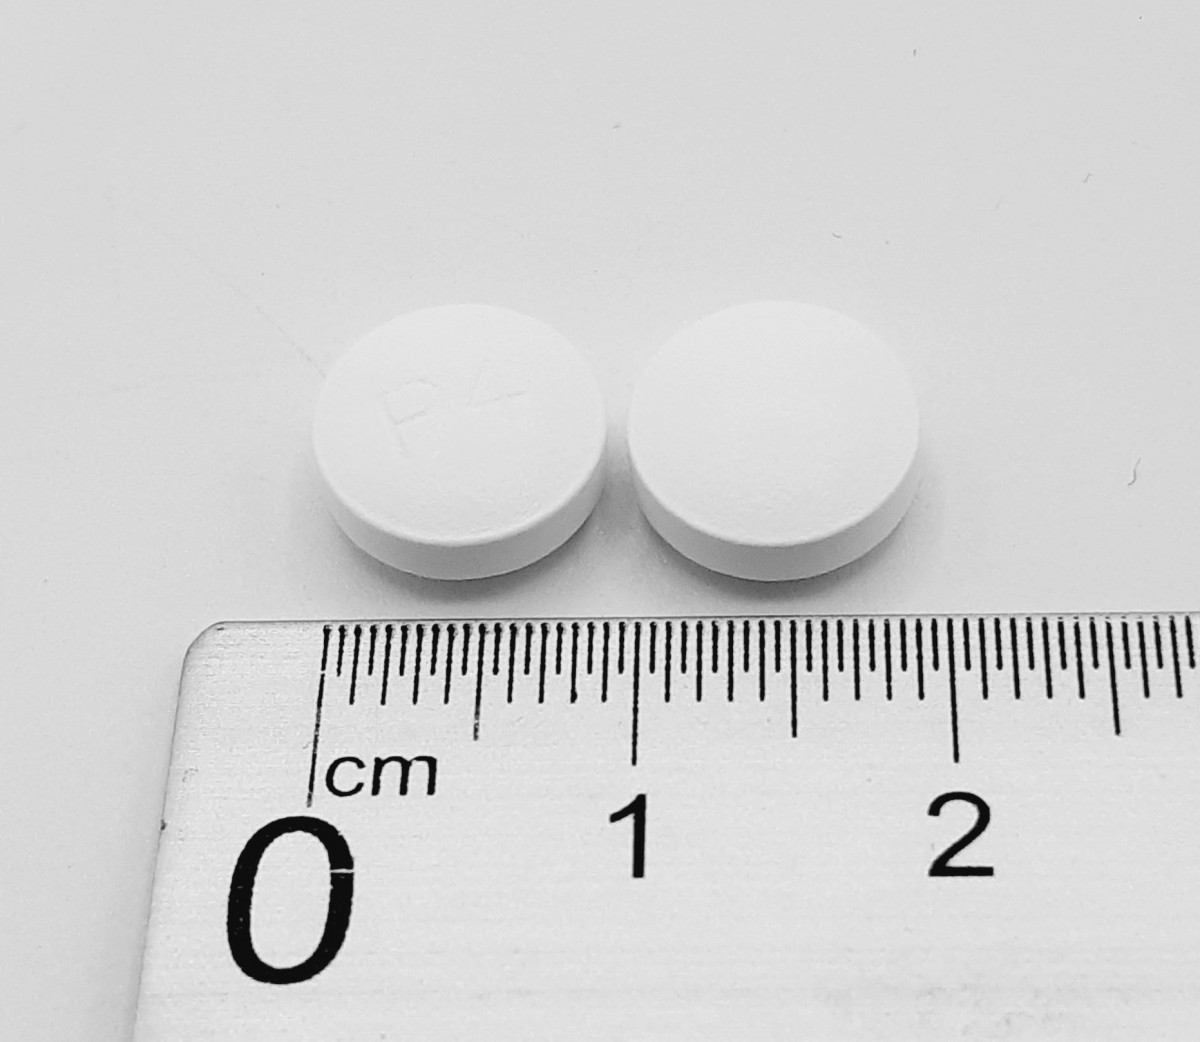 PITAVASTATINA NORMON 4 MG COMPRIMIDOS RECUBIERTOS CON PELICULA EFG , 28 comprimidos fotografía de la forma farmacéutica.